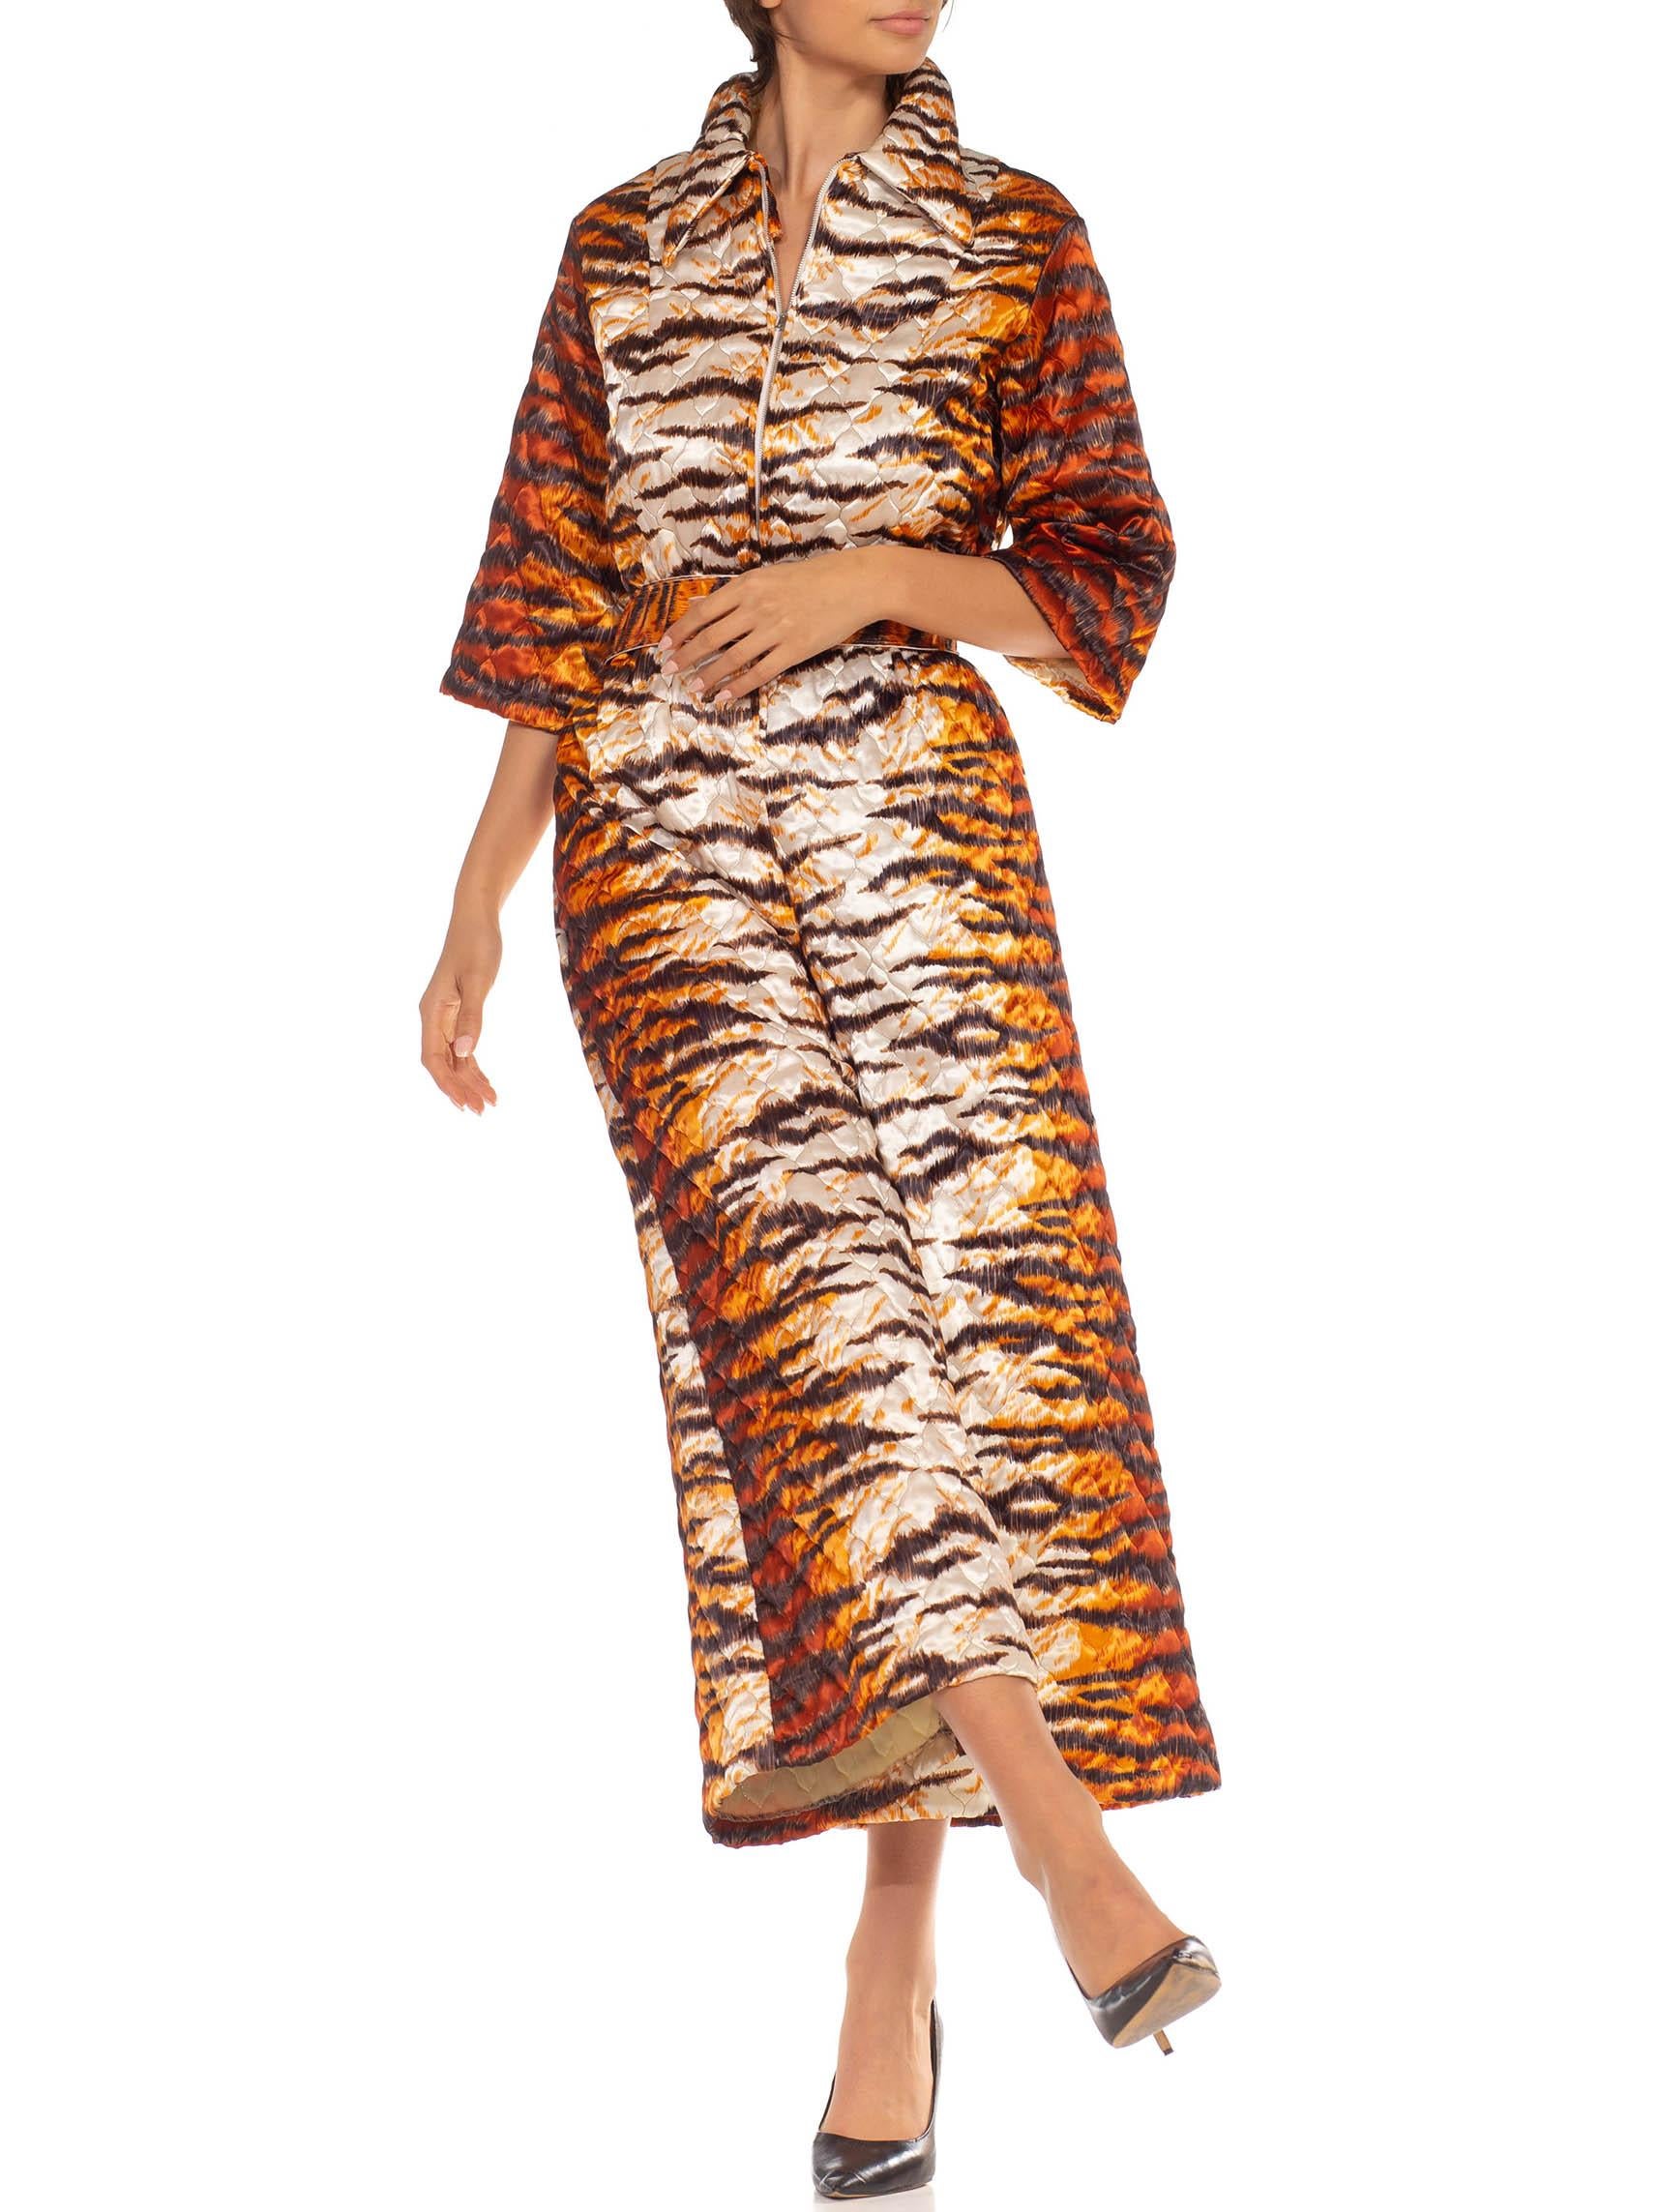 Combinaison matelassée en polyester mélangé imprimé tigre orange et blanc des années 1970 en vente 2